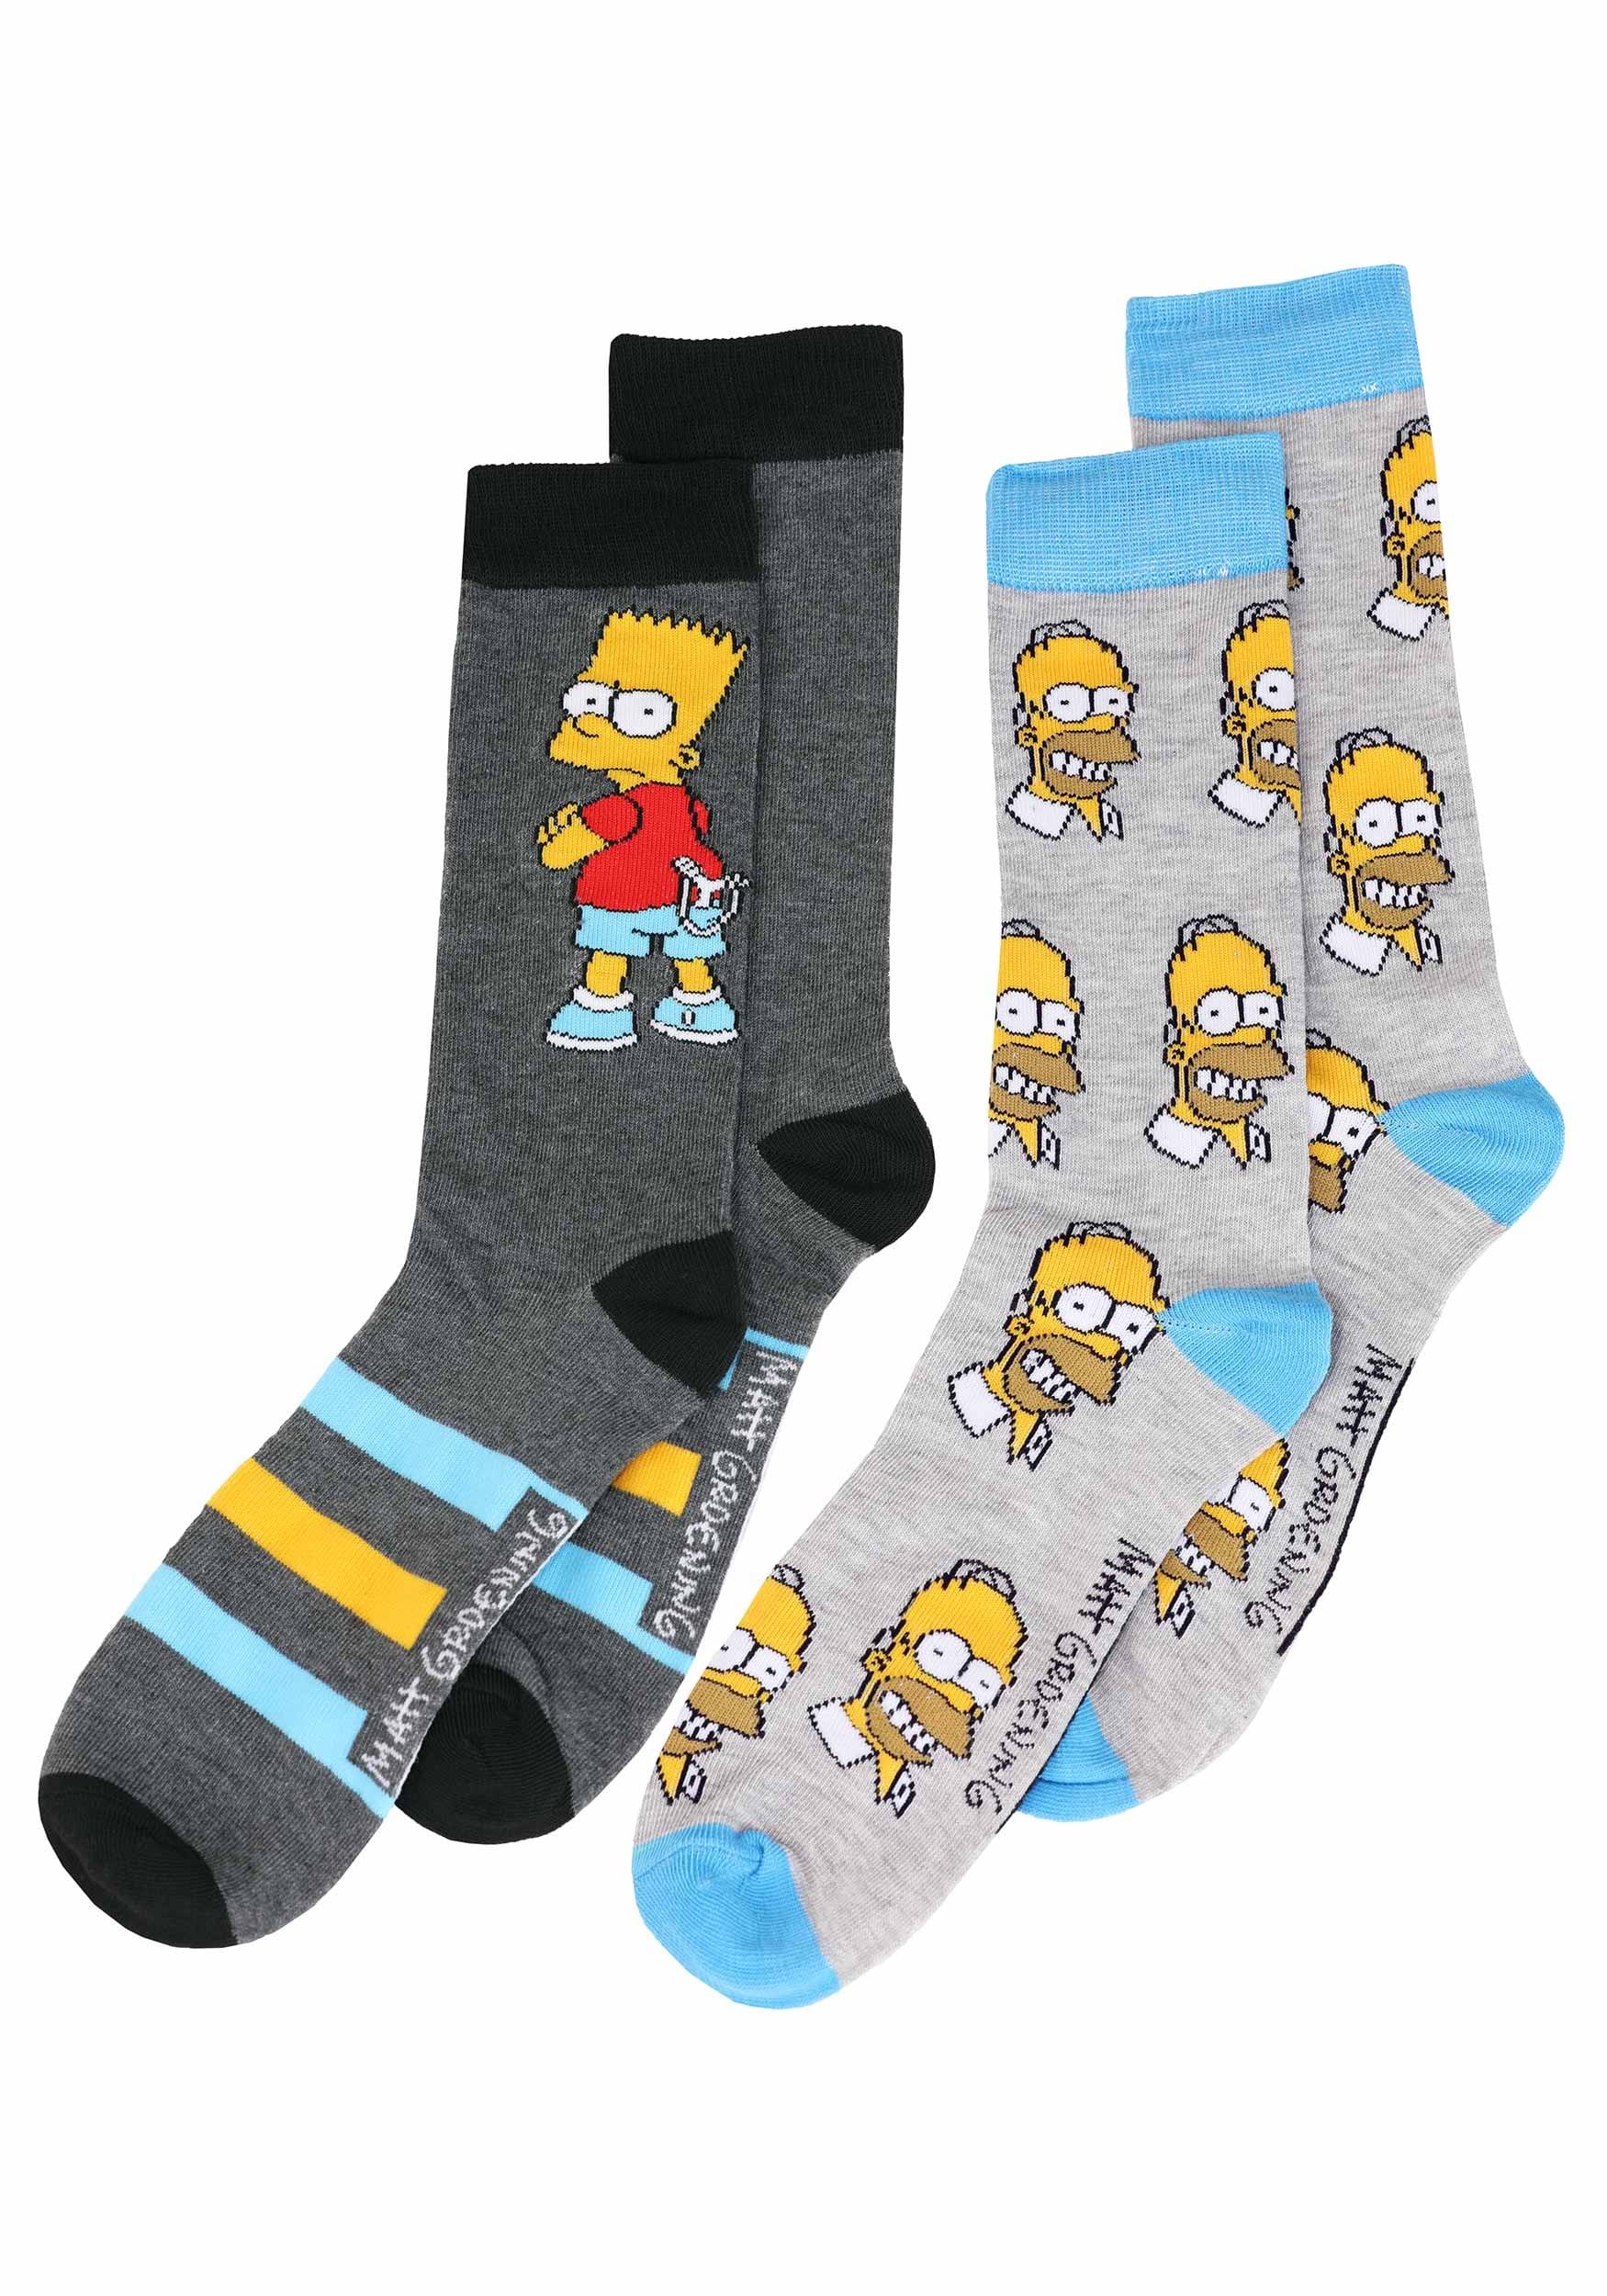 Bart and Homer Simpson 2 Pack Socks for Men